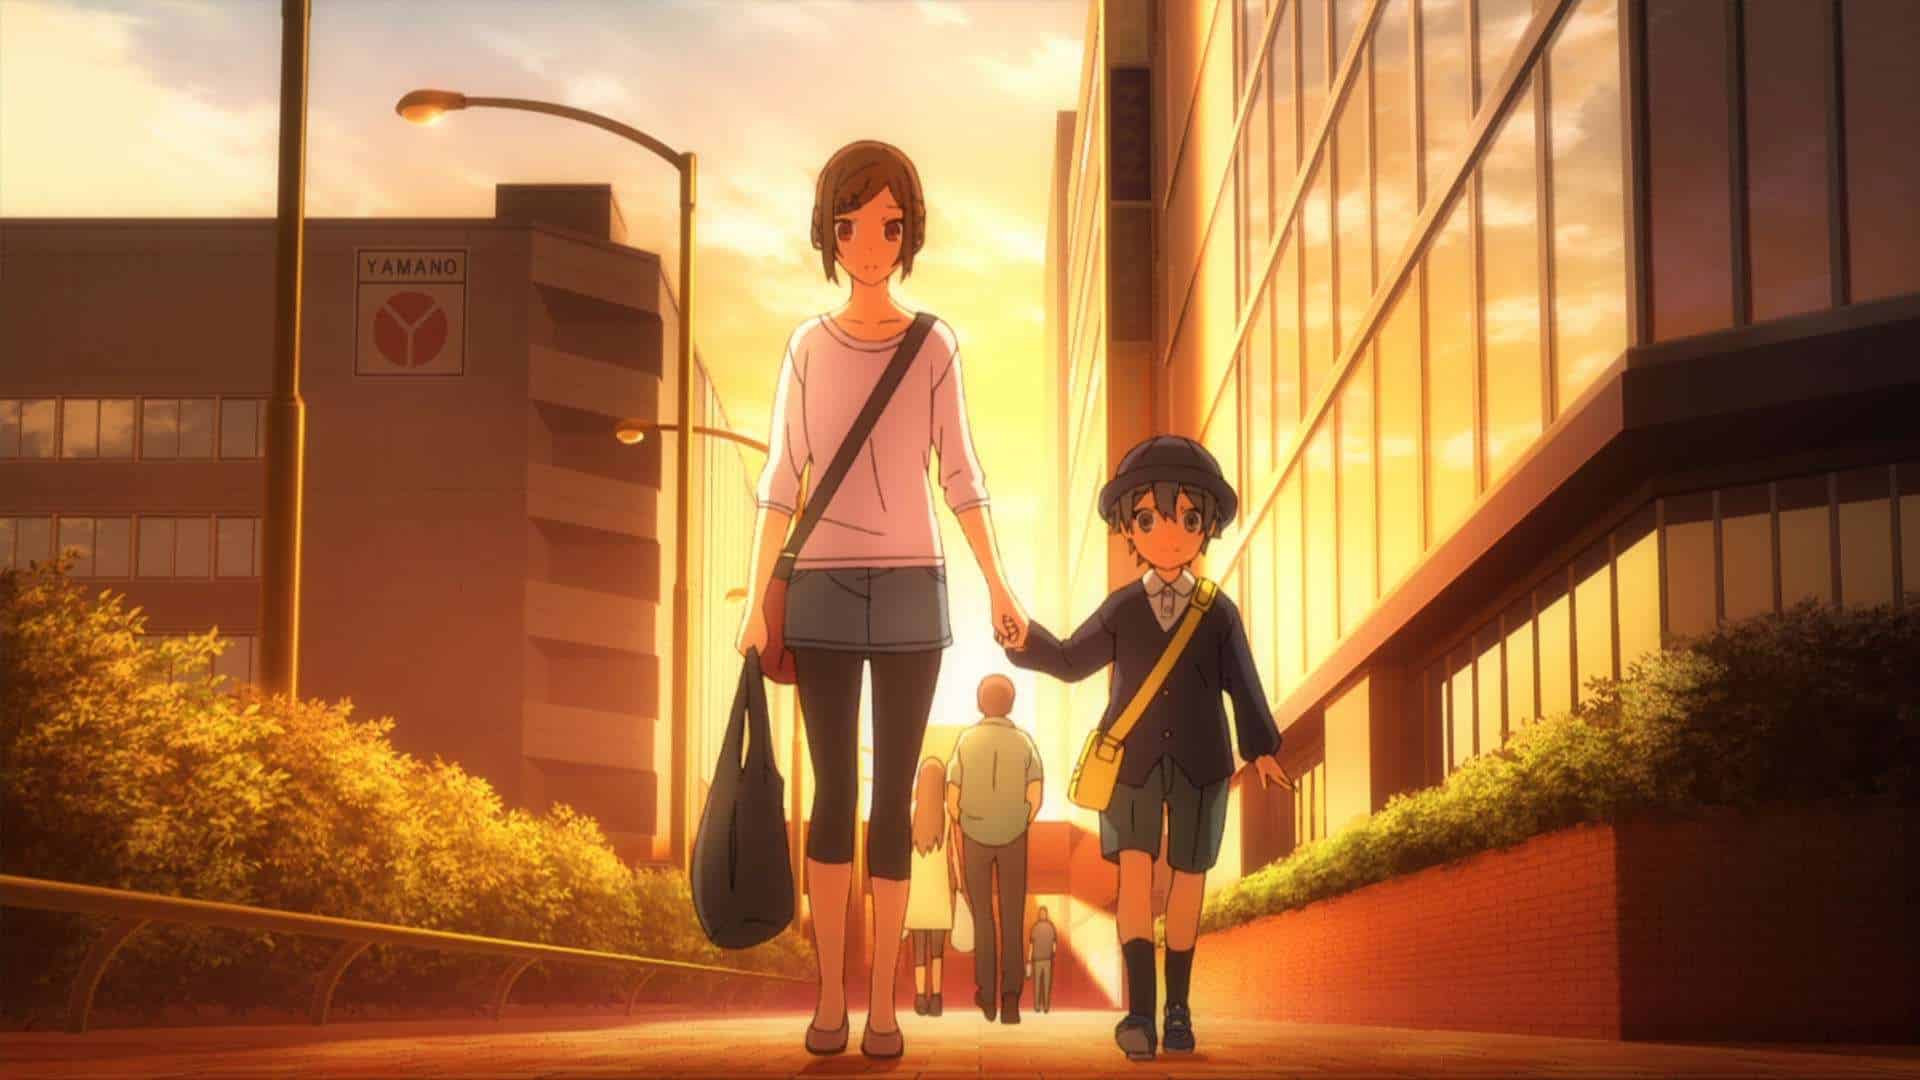 Kyouko und ihr kleiner Bruder unterwegs nach Hause.